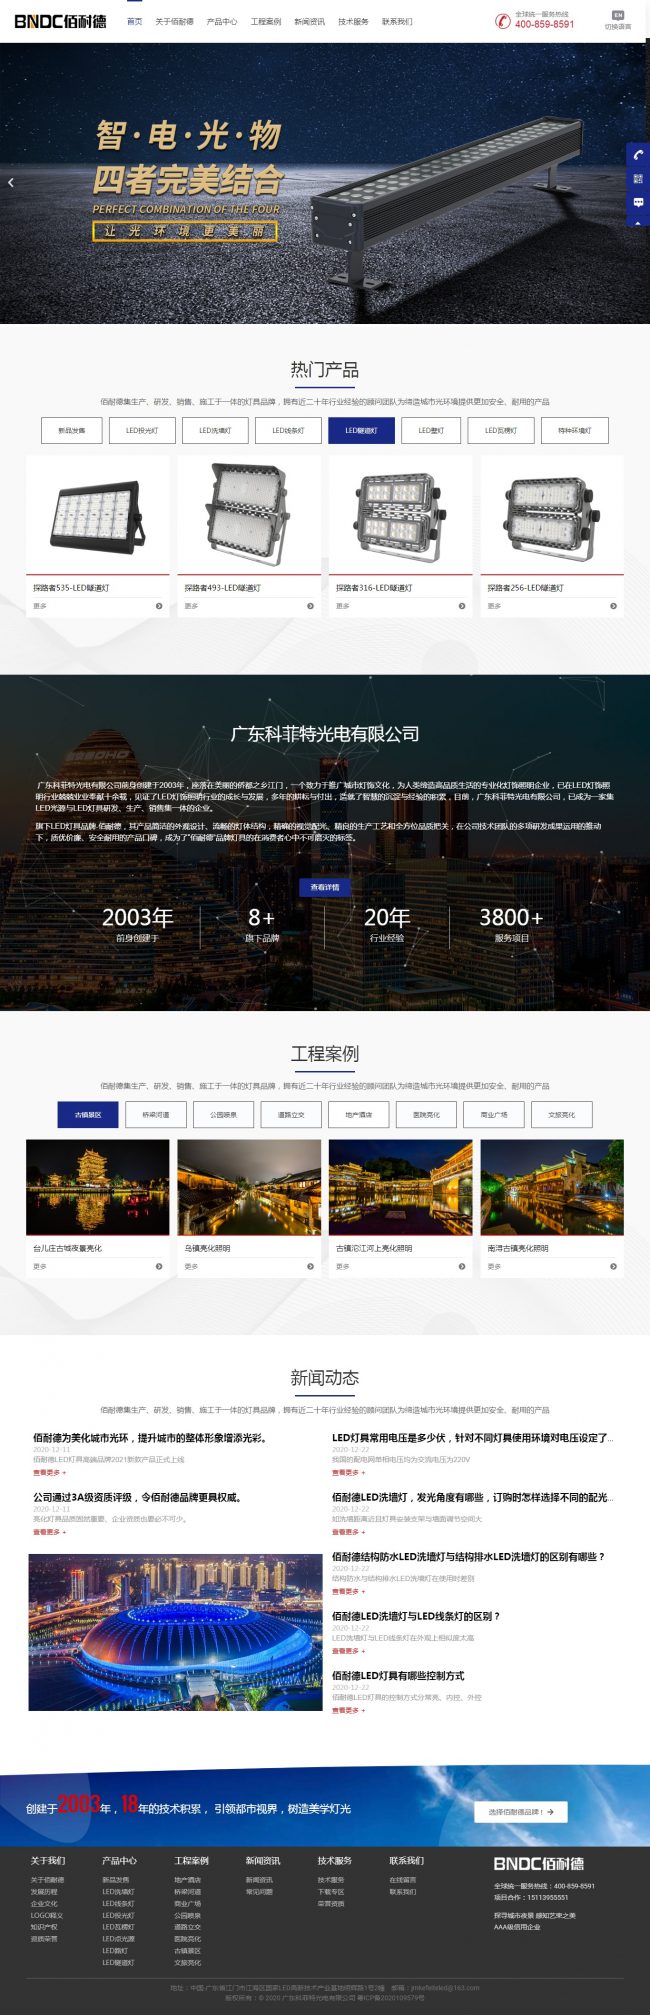 广州奇异果互动科技股份有限公司 网站建设报价方案